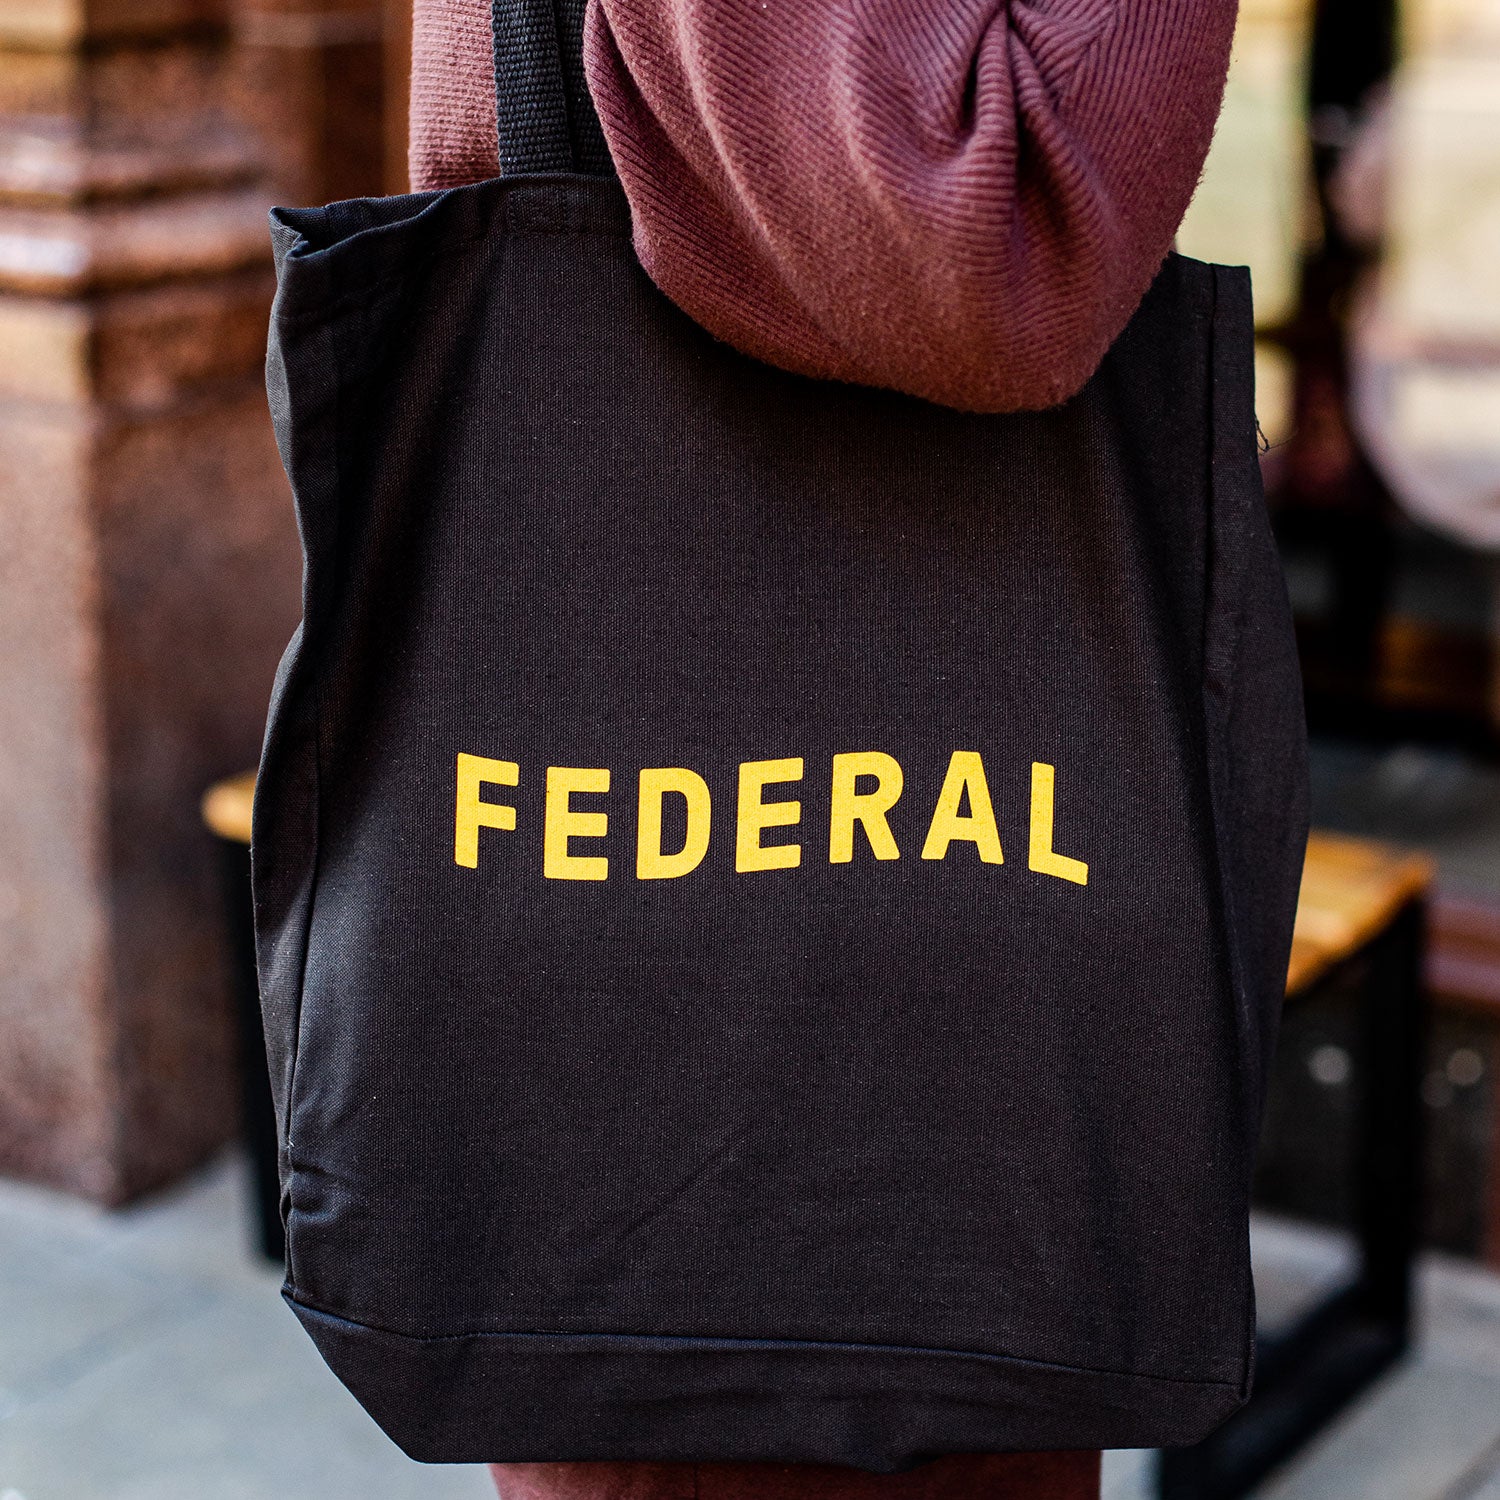 Federal Tote Bag